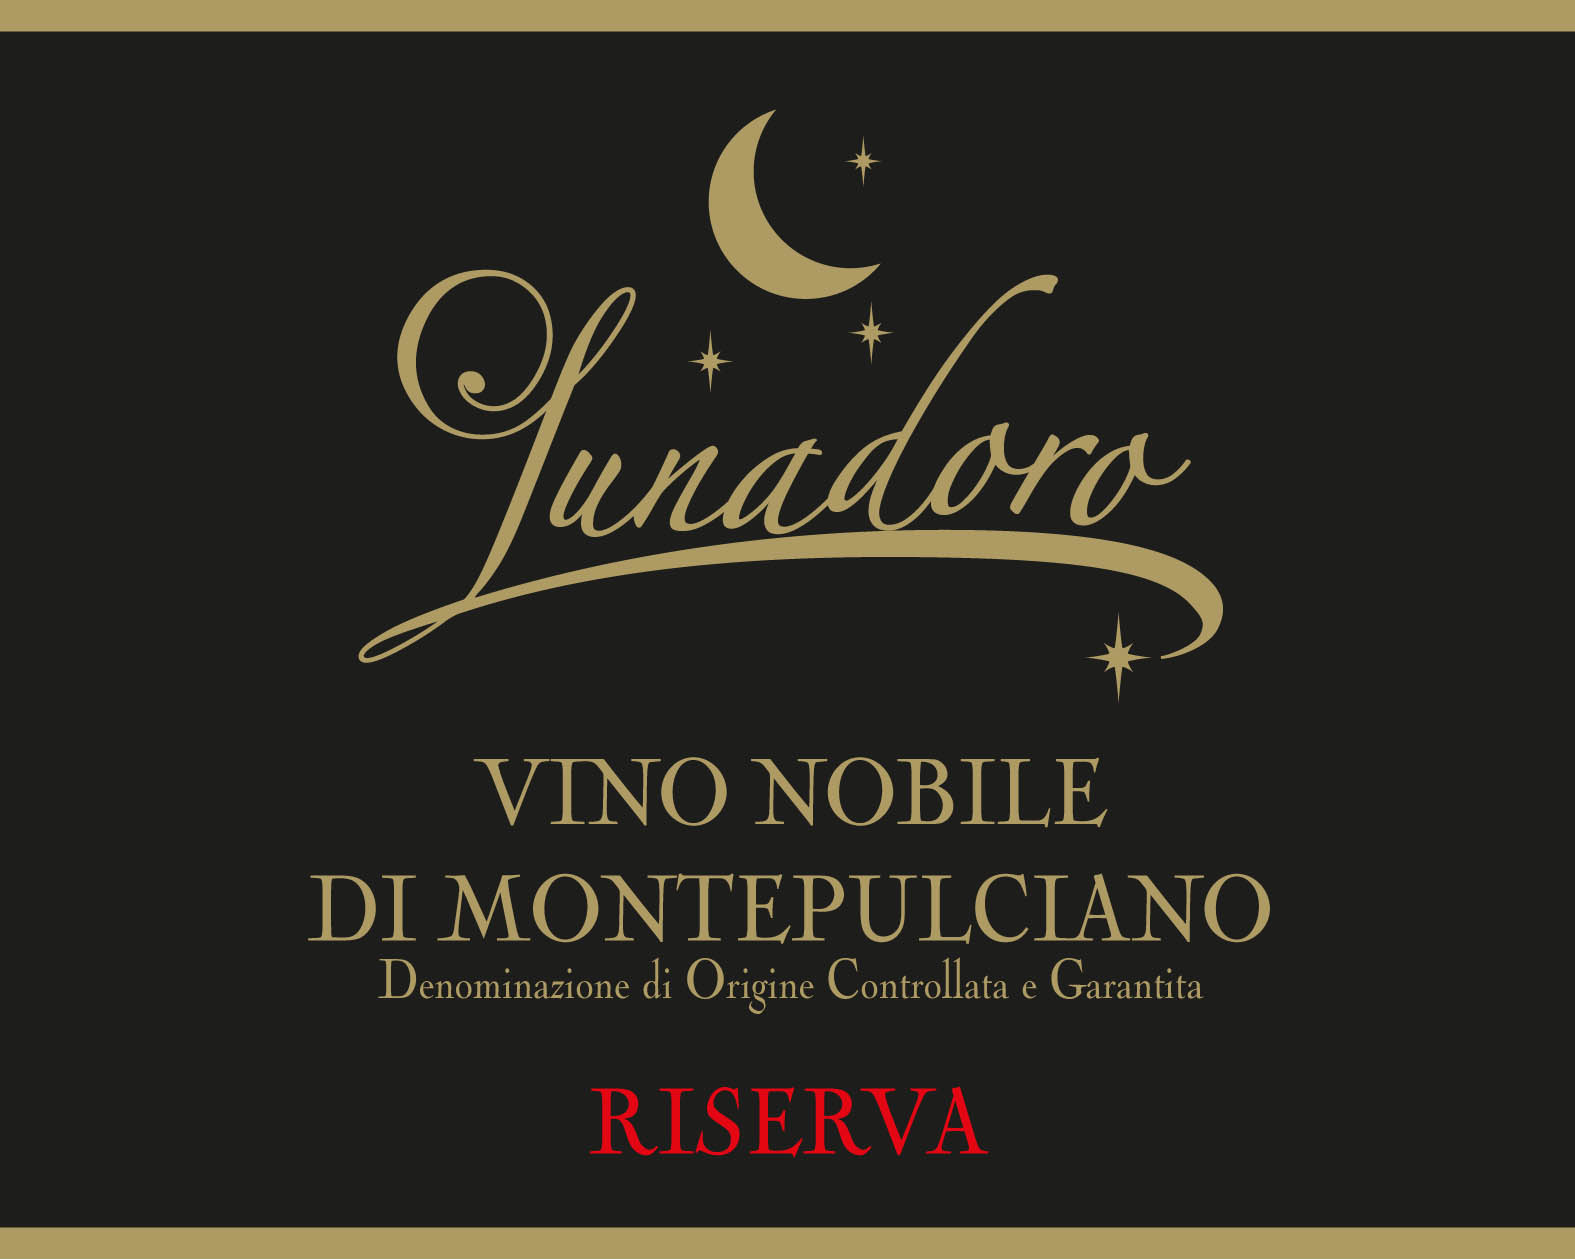 Lunadoro Quercione Vino Nobile di Montepulciano Riserva DOCG main image